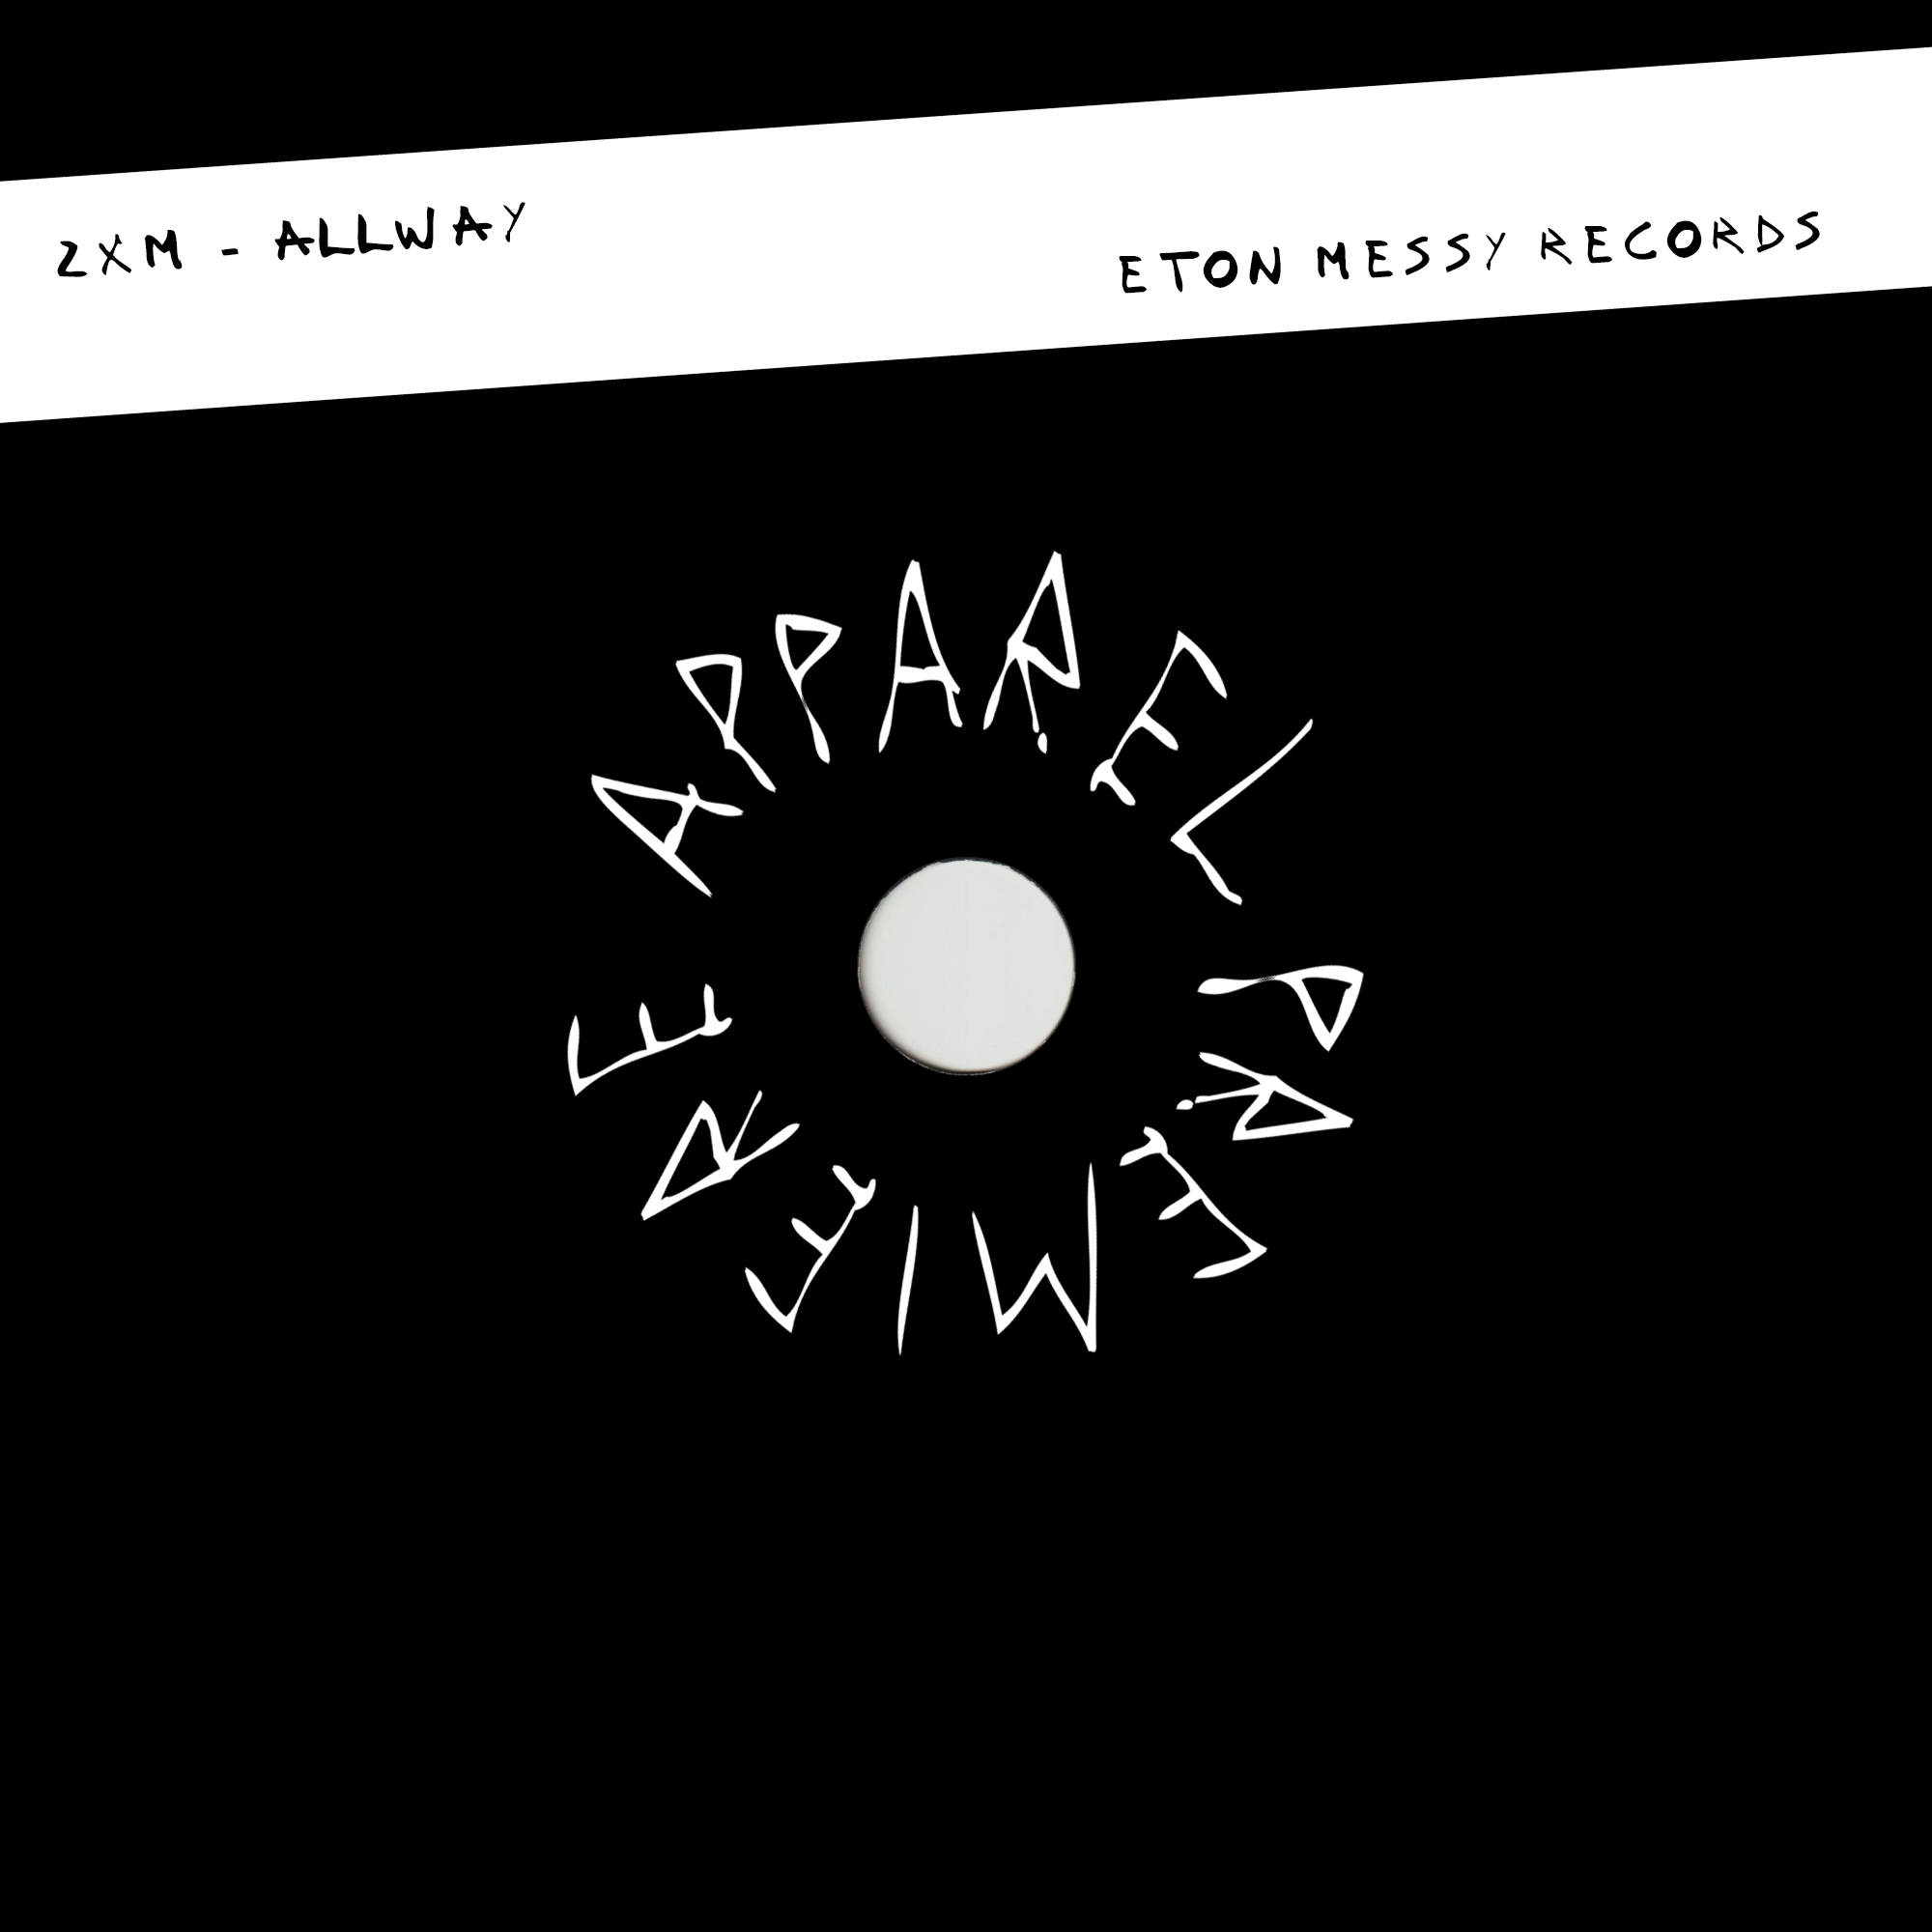 APPAREL PREMIERE 2XM – Allway [Eton Messy Records]